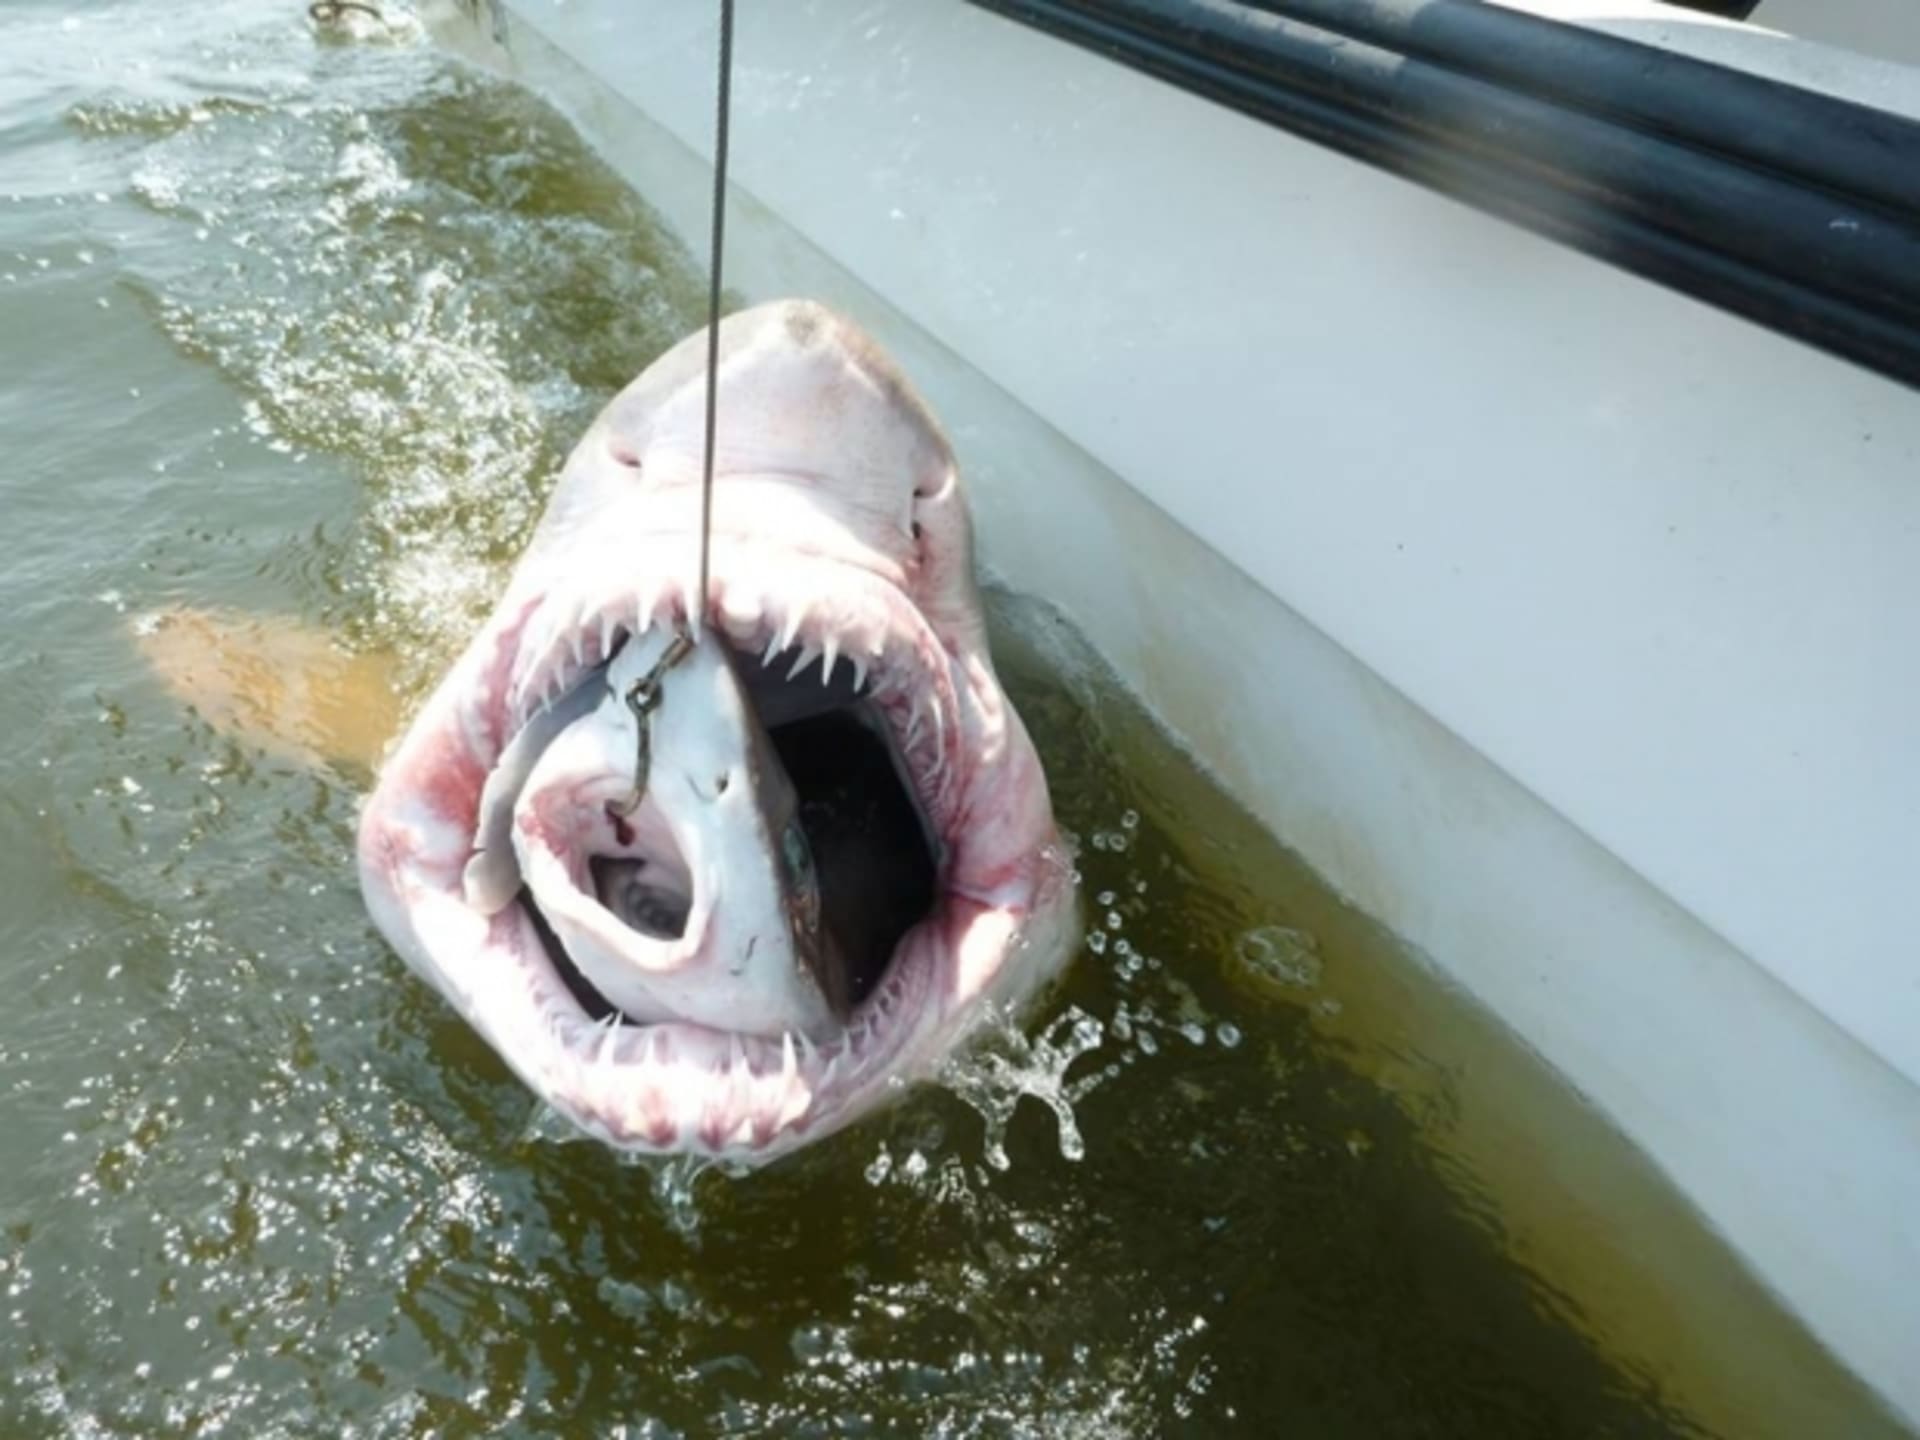 Chytání žraloků je velmi riskantní. A pokud chytíte dva najednou, je to ještě riskatnější.